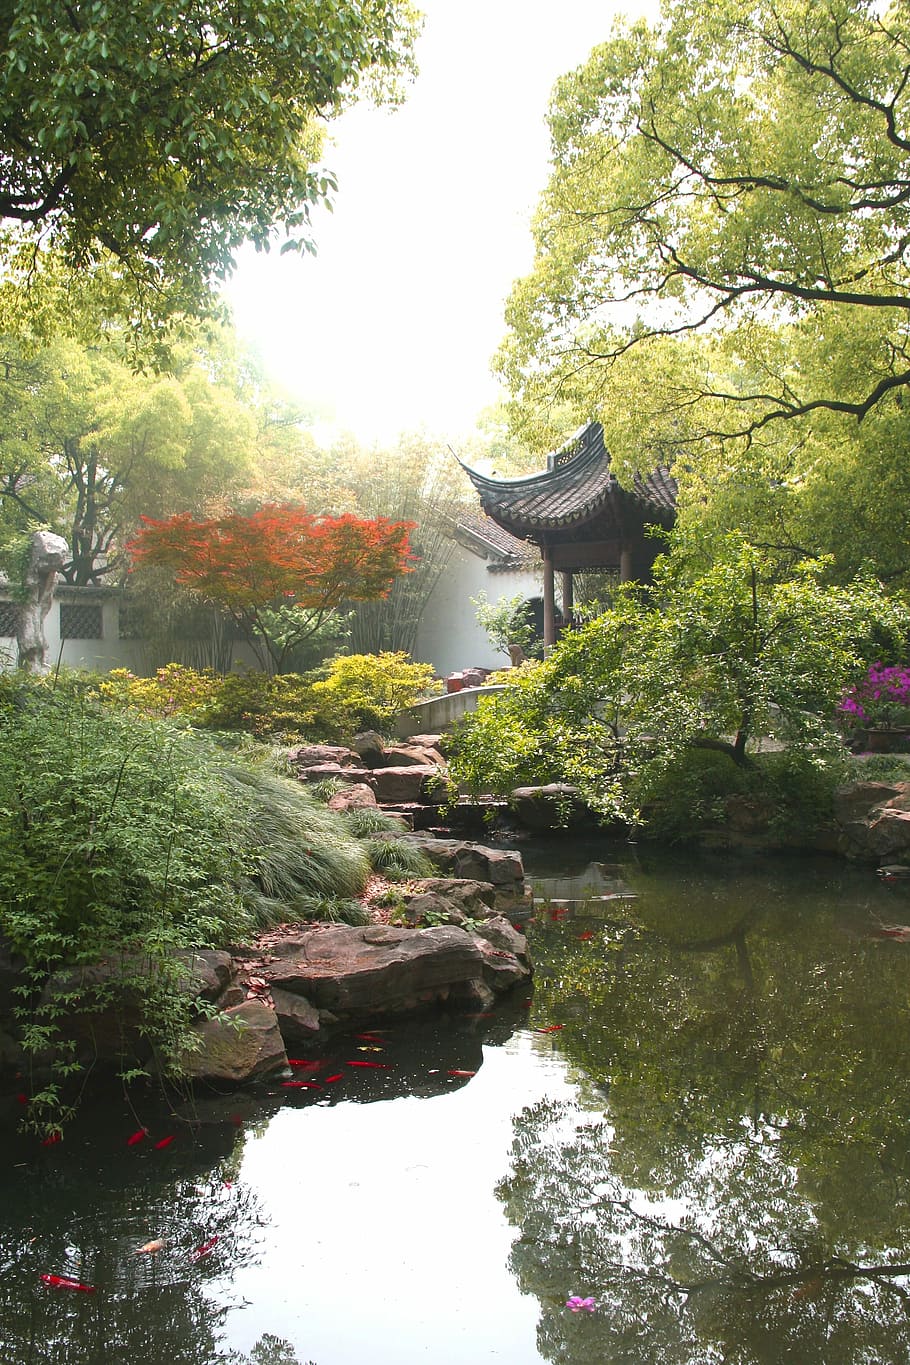 paisaje del jardín jichang, jardín Jichang, paisaje, Wuxi, Jiangsu, China, fotos, dominio público, asia, japón